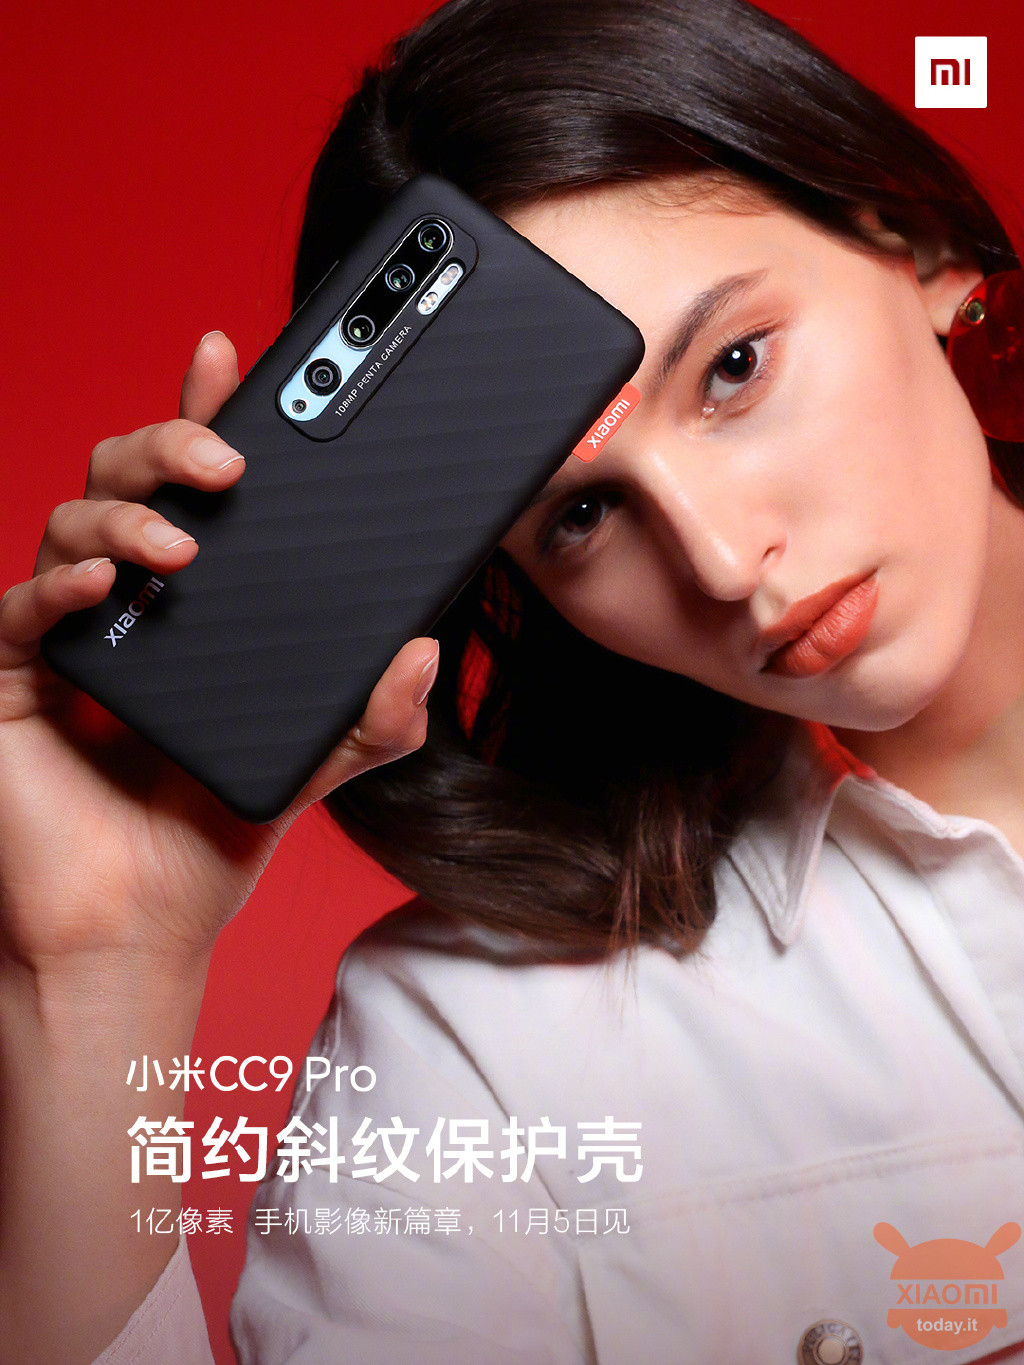 Xiaomi Redmi Mi Cc9